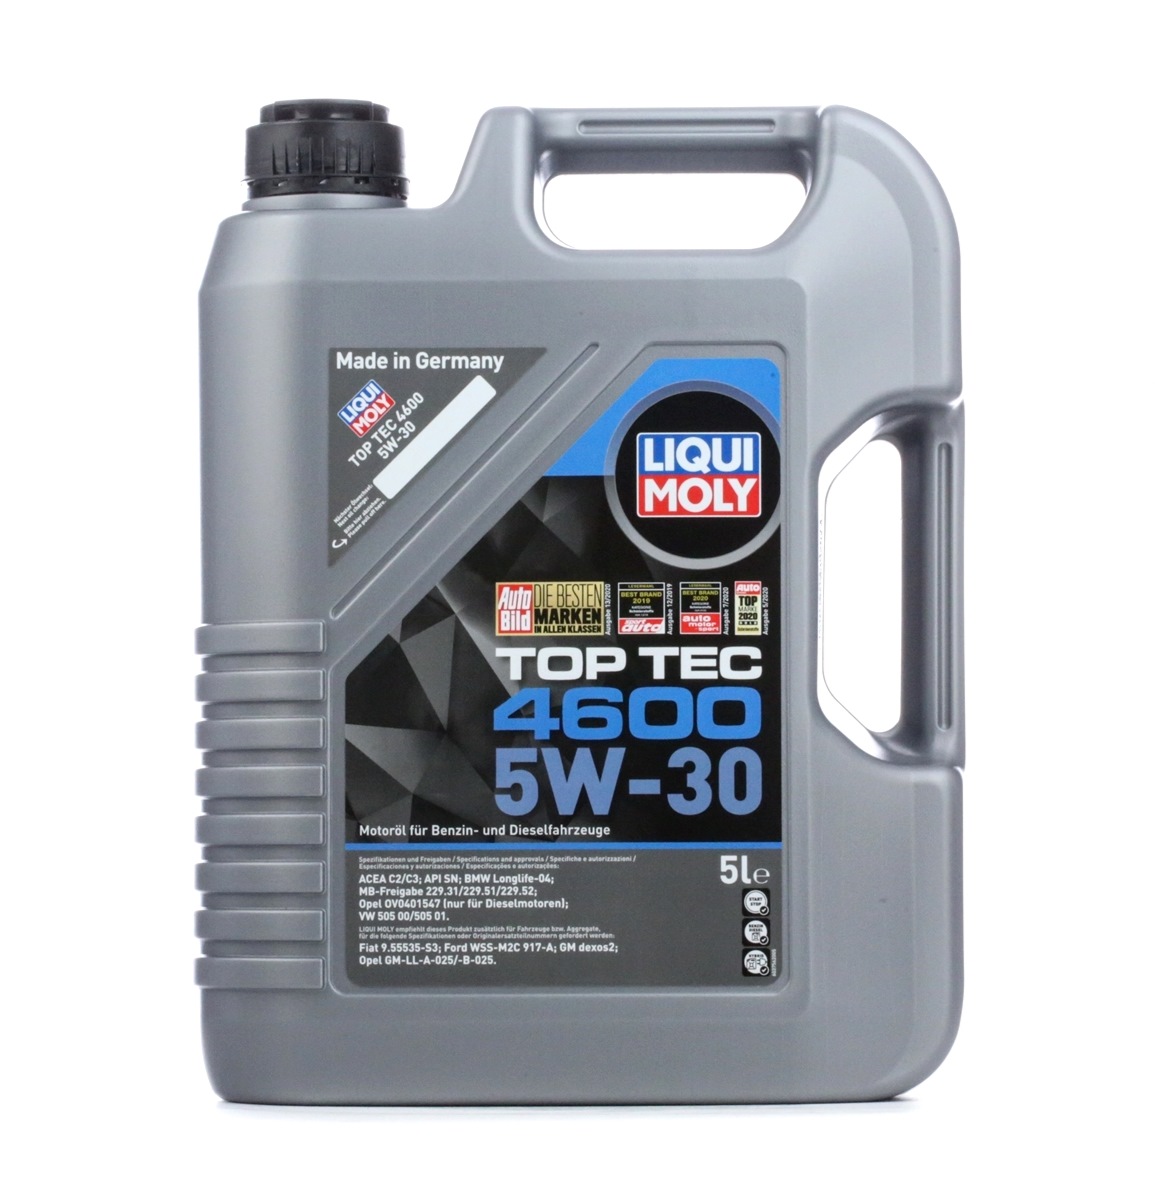 LIQUI MOLY Top Tec, 4600 2316 Engine oil 5W-30, 5l, Synthetic Oil